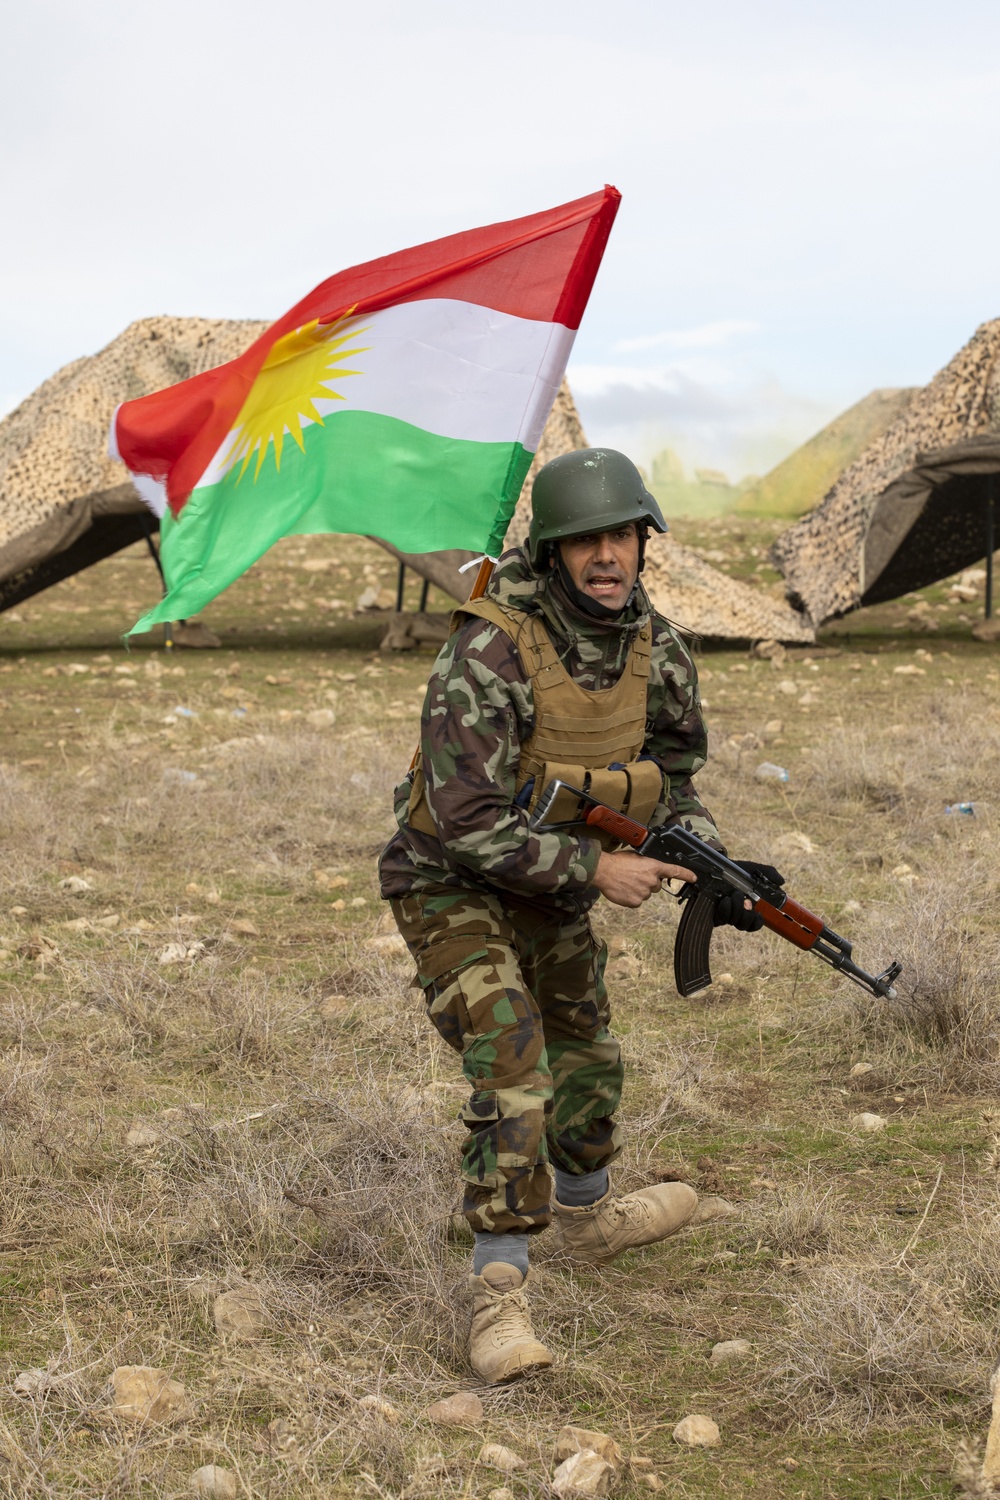 Peshmerga Forces Final Exercise at Sulaymaniyah Training Center